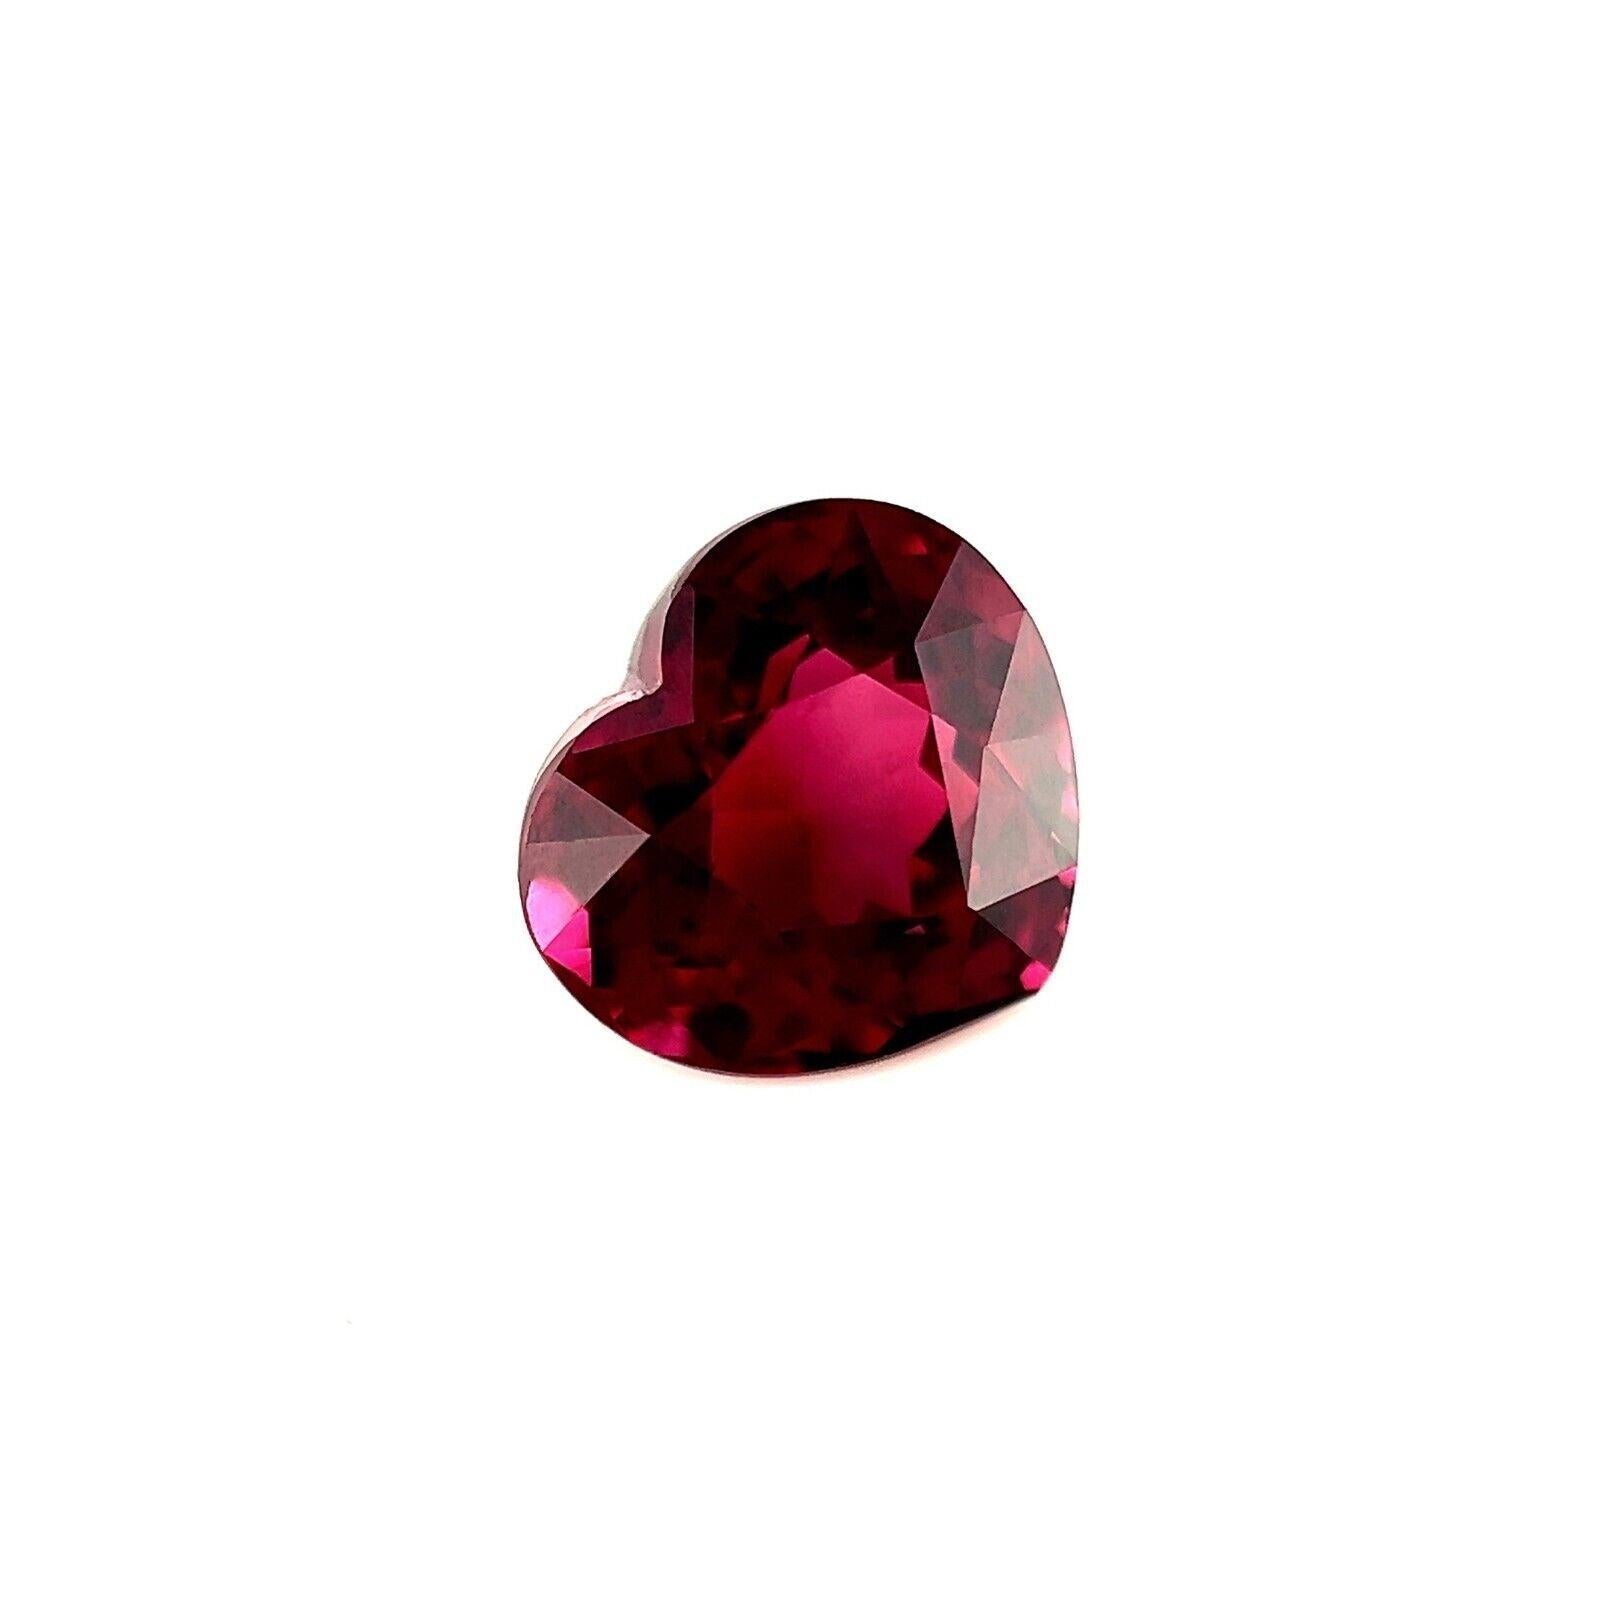 Feiner 2,70ct violett-rosa Rhodolith-Granat mit Herzschliff und losem Edelstein 8,4x7,6mm VS

Feiner natürlicher Rhodolith-Granat, loser Edelstein.
2,70 Karat mit einer schönen rosa-violetten Farbe und sehr guter Reinheit, VS.
Dieser Stein hat auch